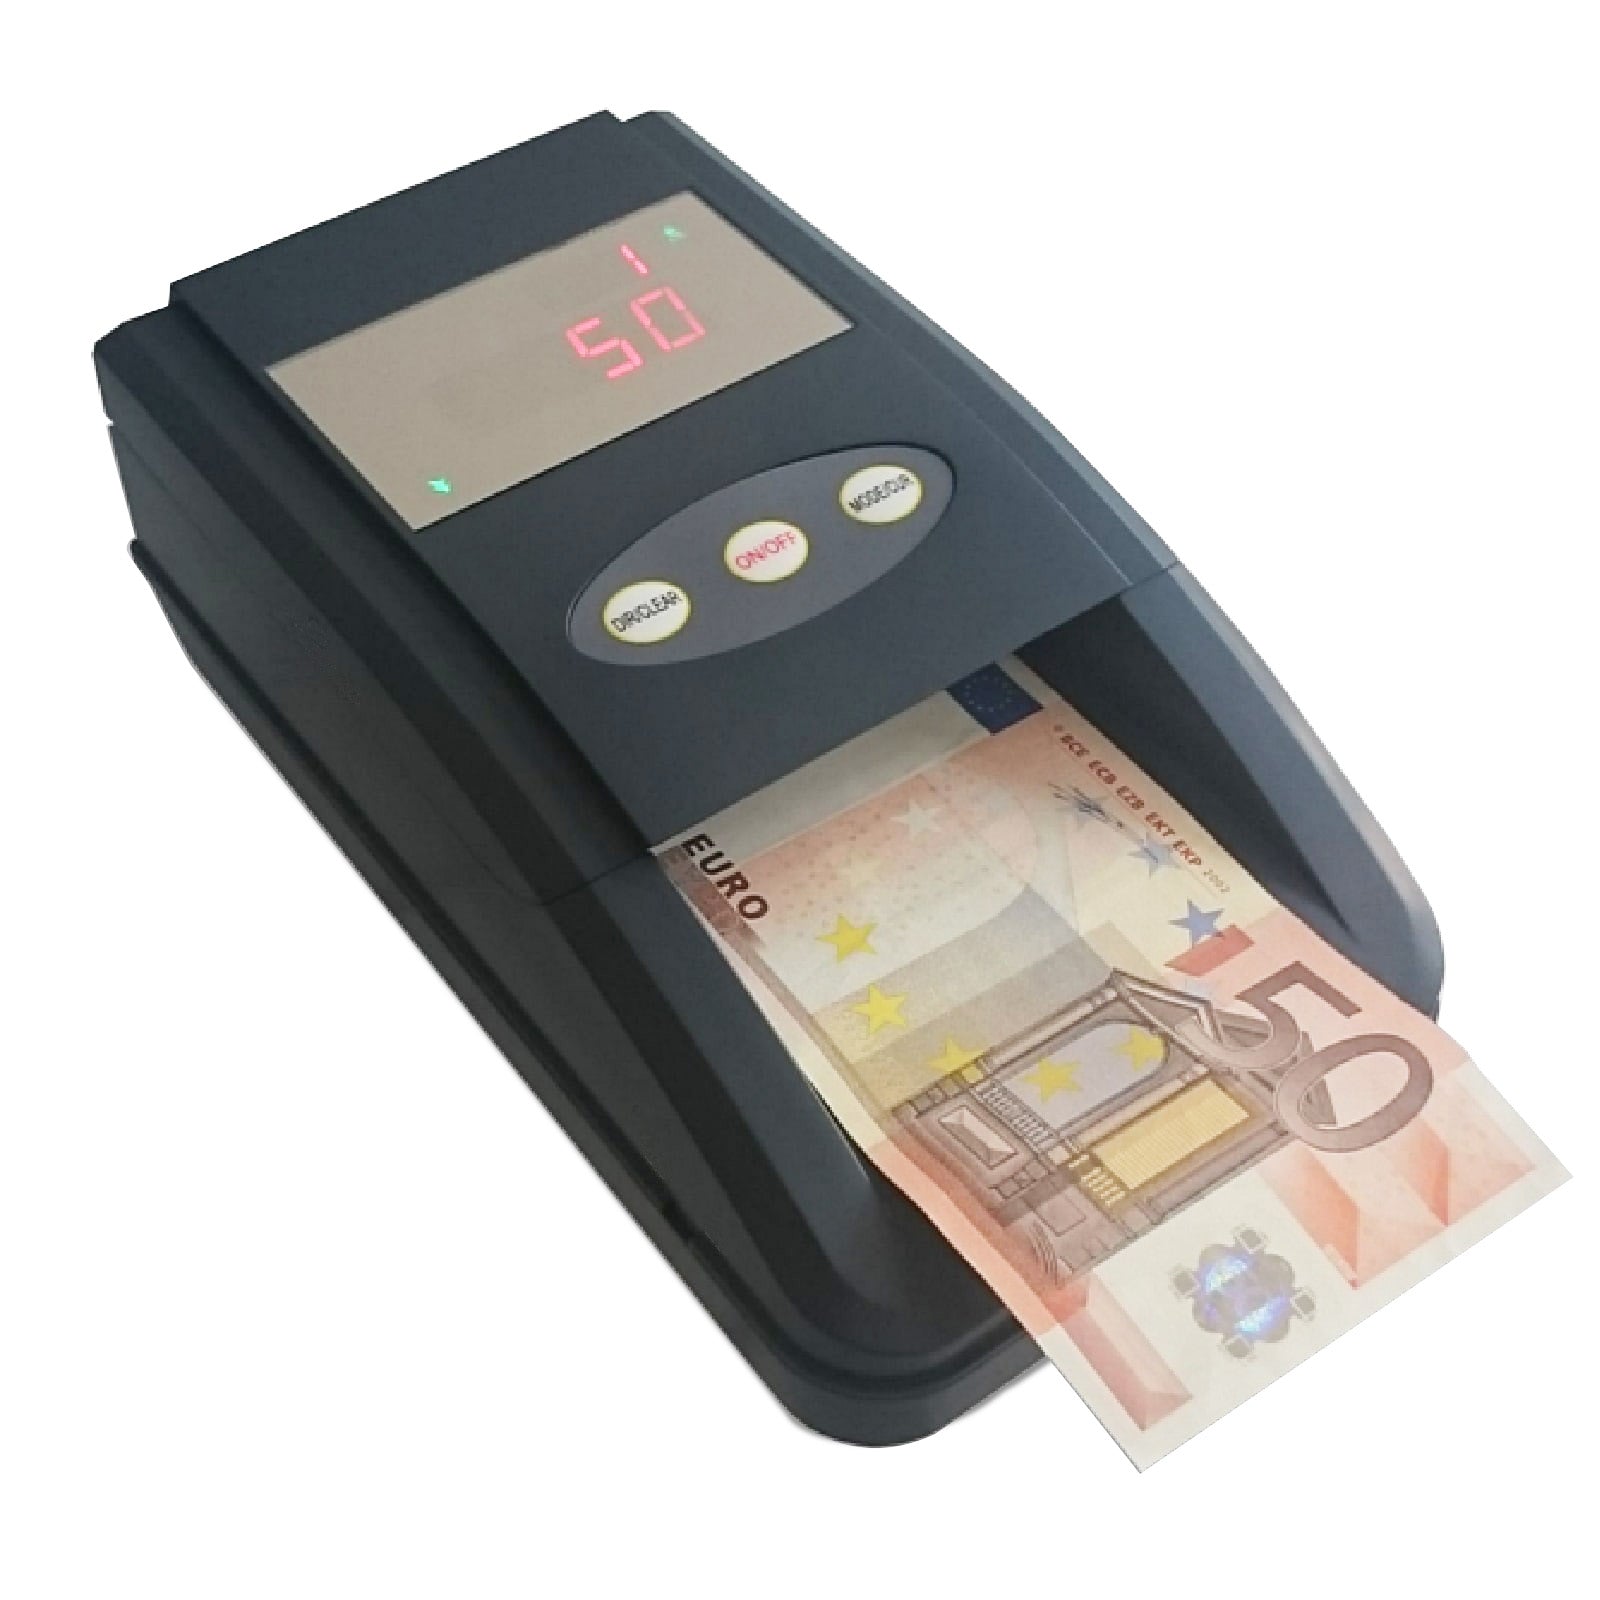 Rilevatore conta banconote false Verifica soldi falsi aggiornato